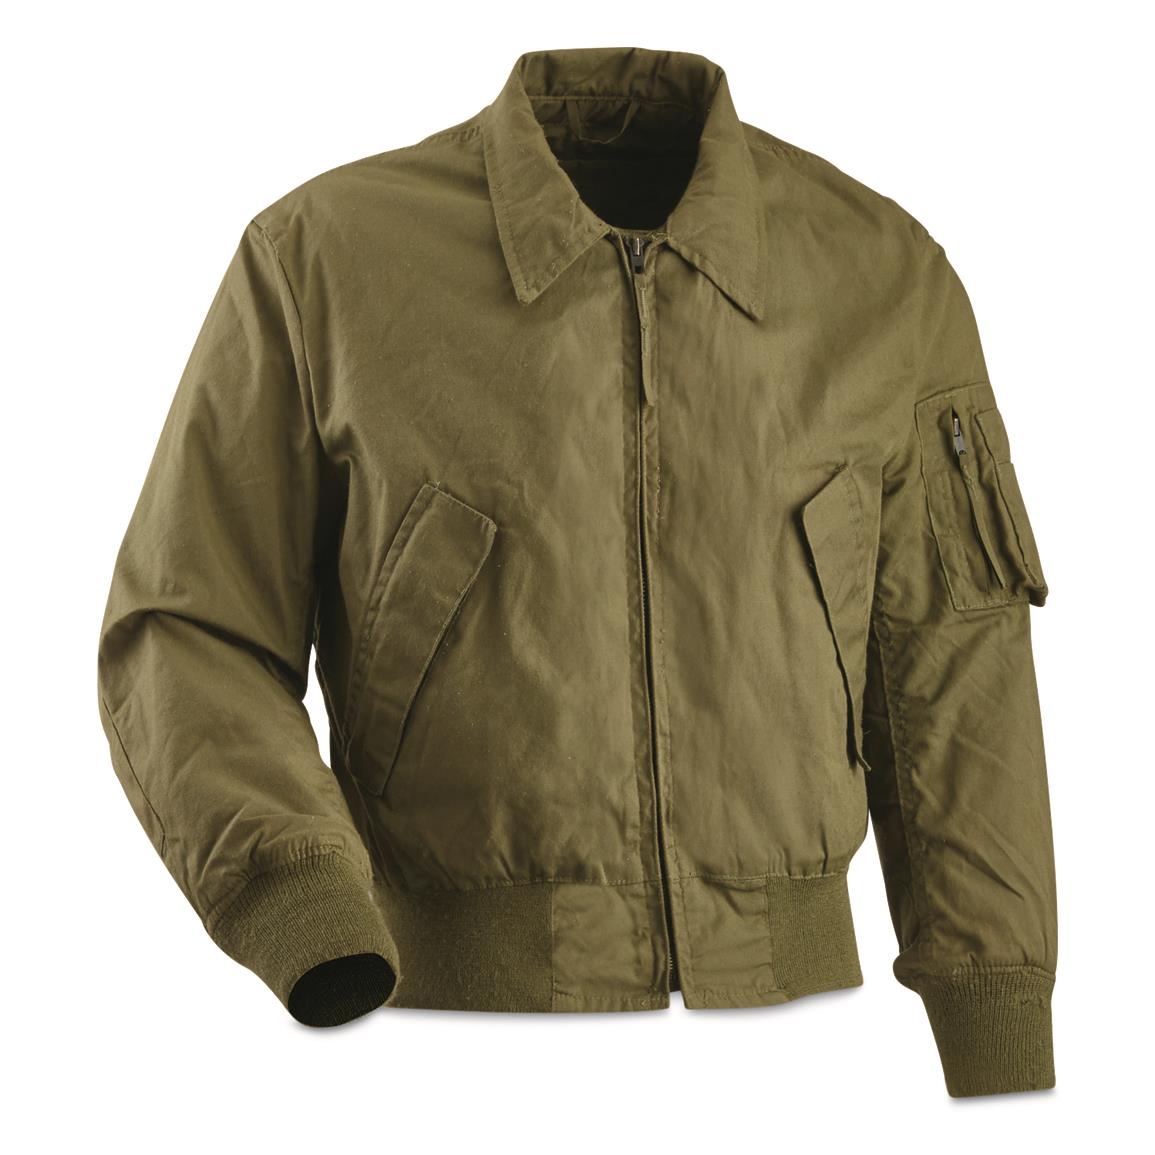 U.S. Military Surplus Cold Weather CVC Jacket, Used, Olive Drab